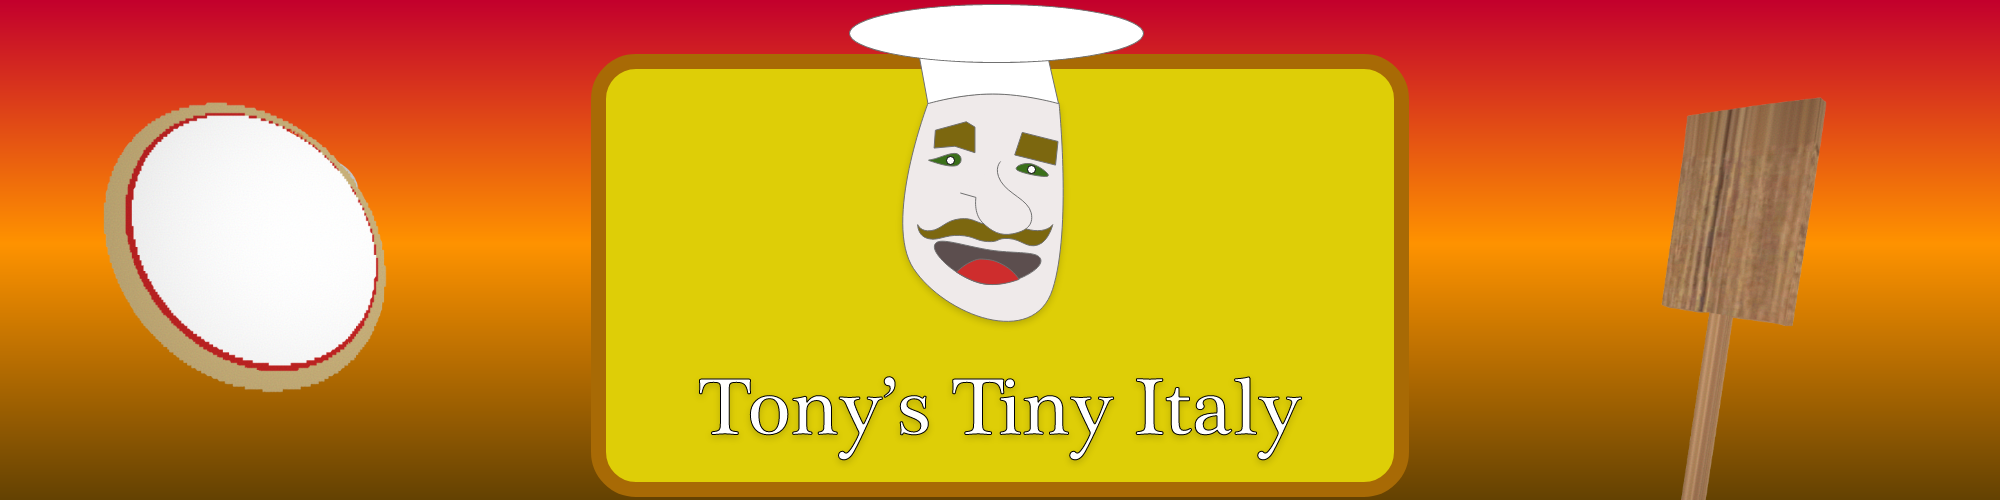 Tony's Tiny Italy